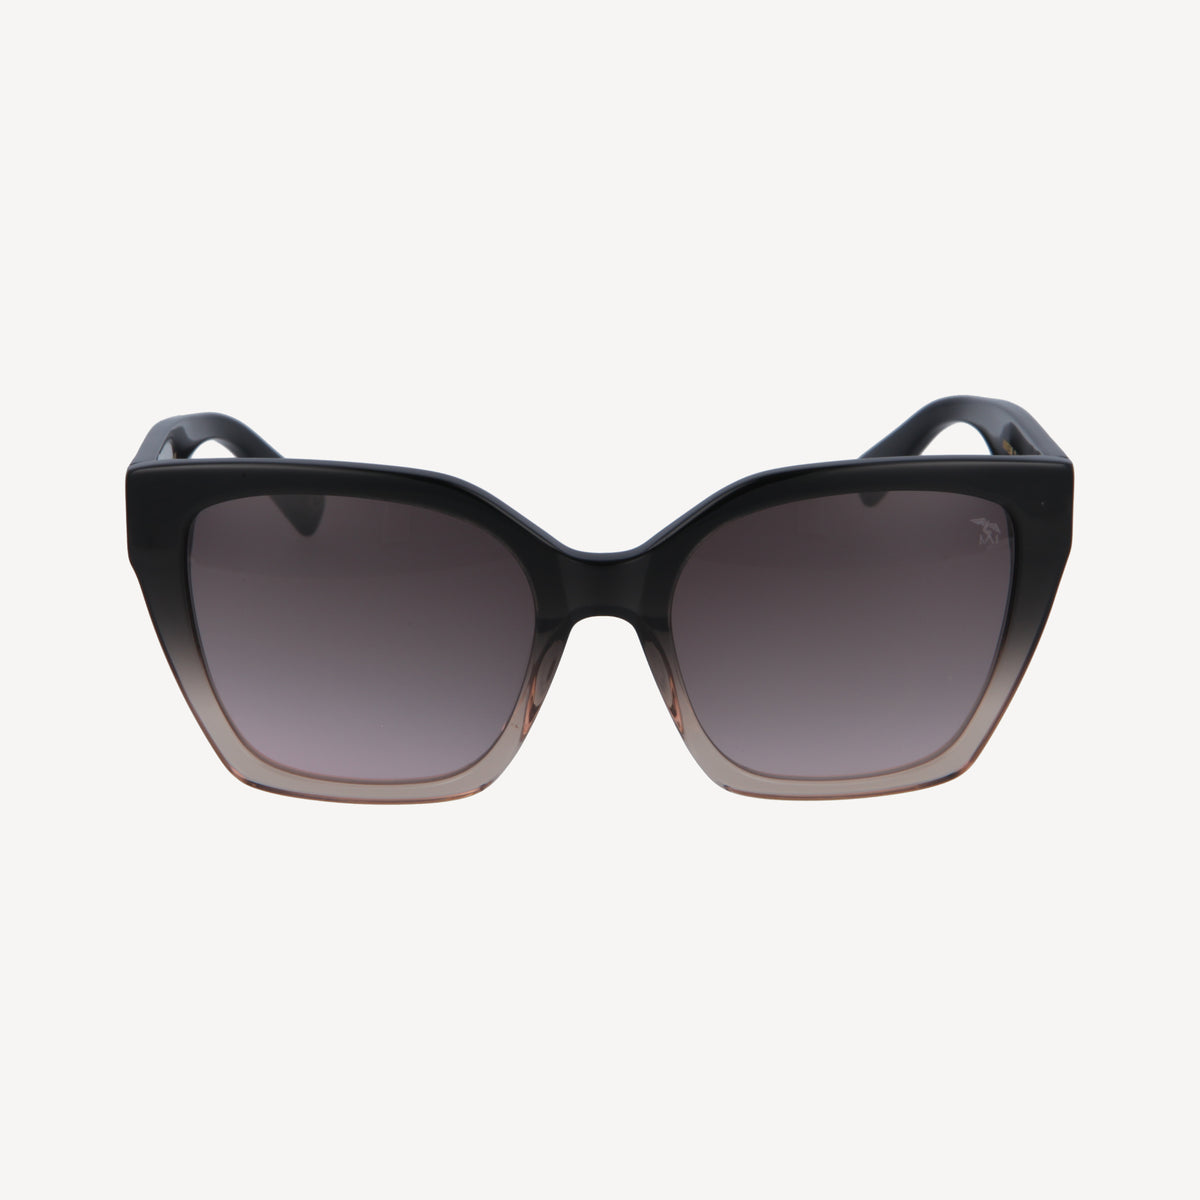 MONTE BAR | Sonnenbrille schwarz beige/silberMONTE BAR | Sonnenbrille schwarz beige/silber - FRONTAL